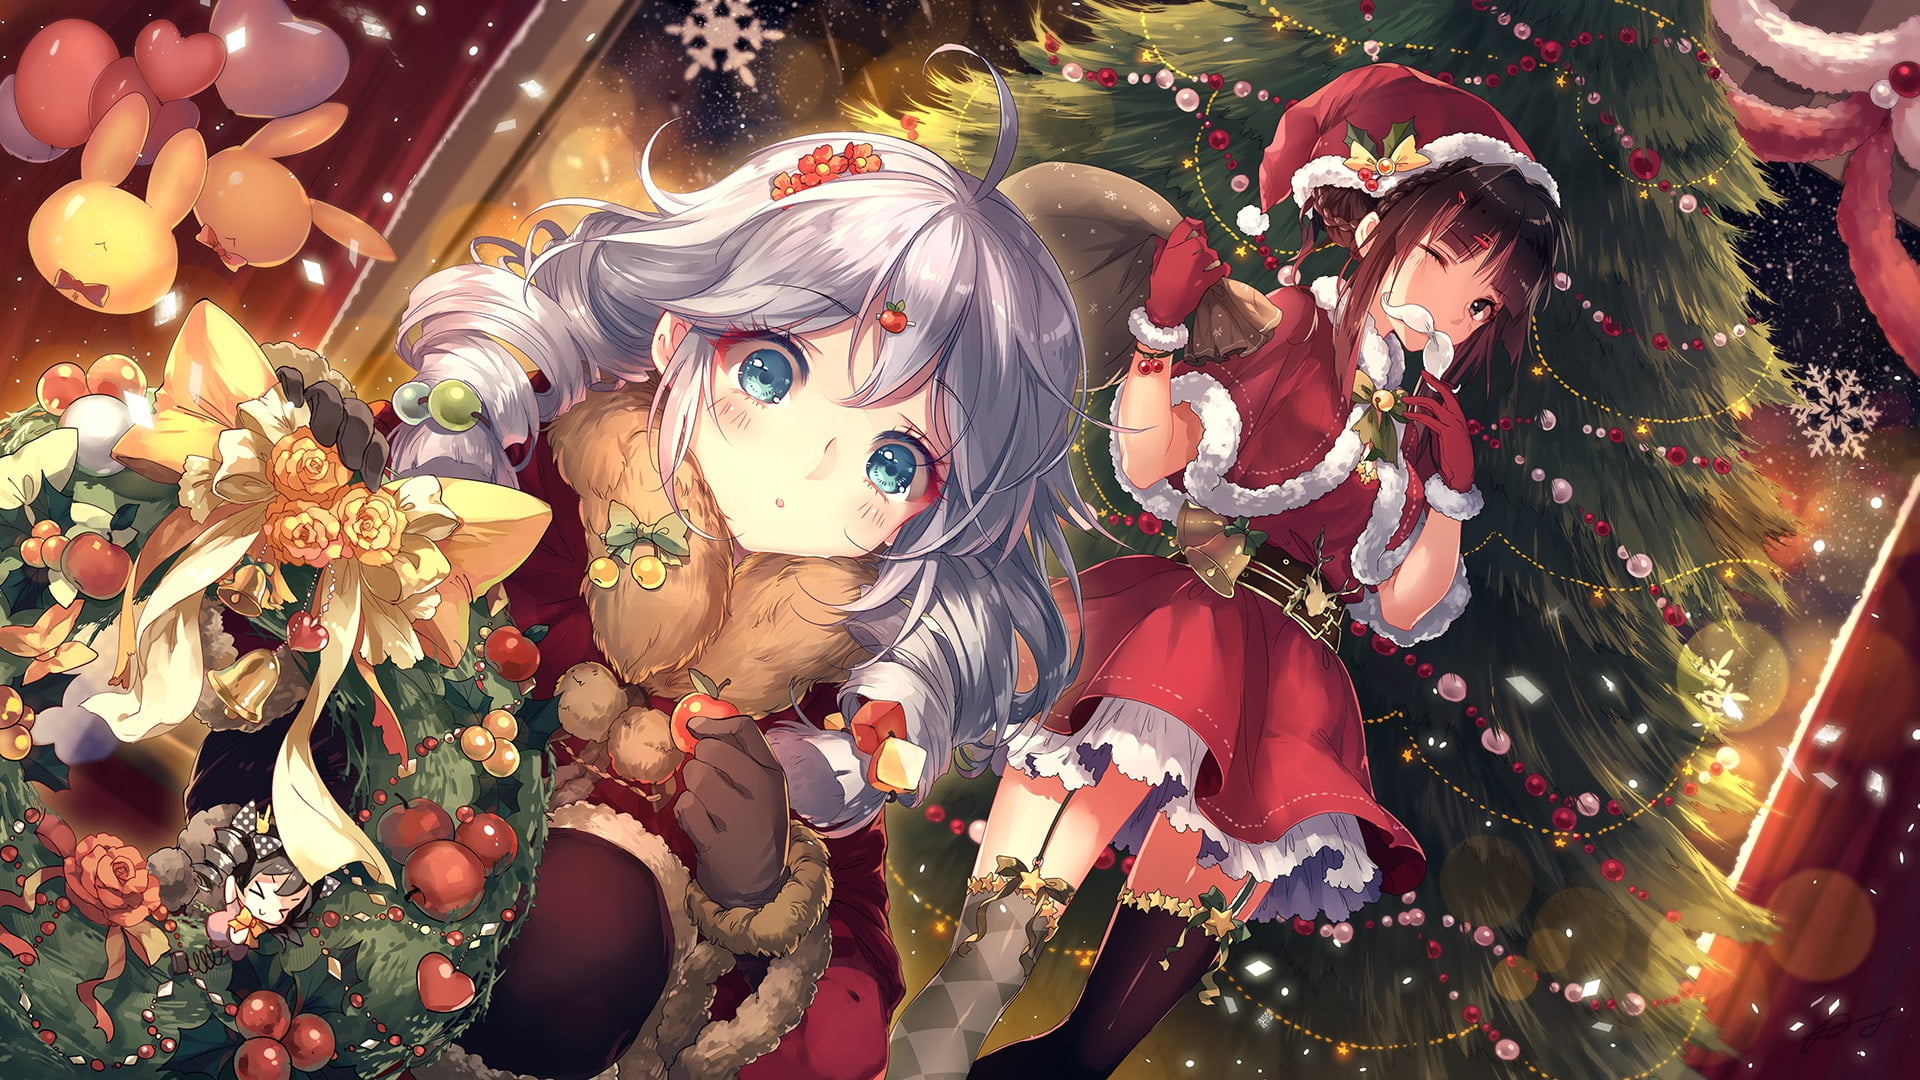 Kawaii Christmas Anime Girl High-Res Vector Graphic - Getty Images